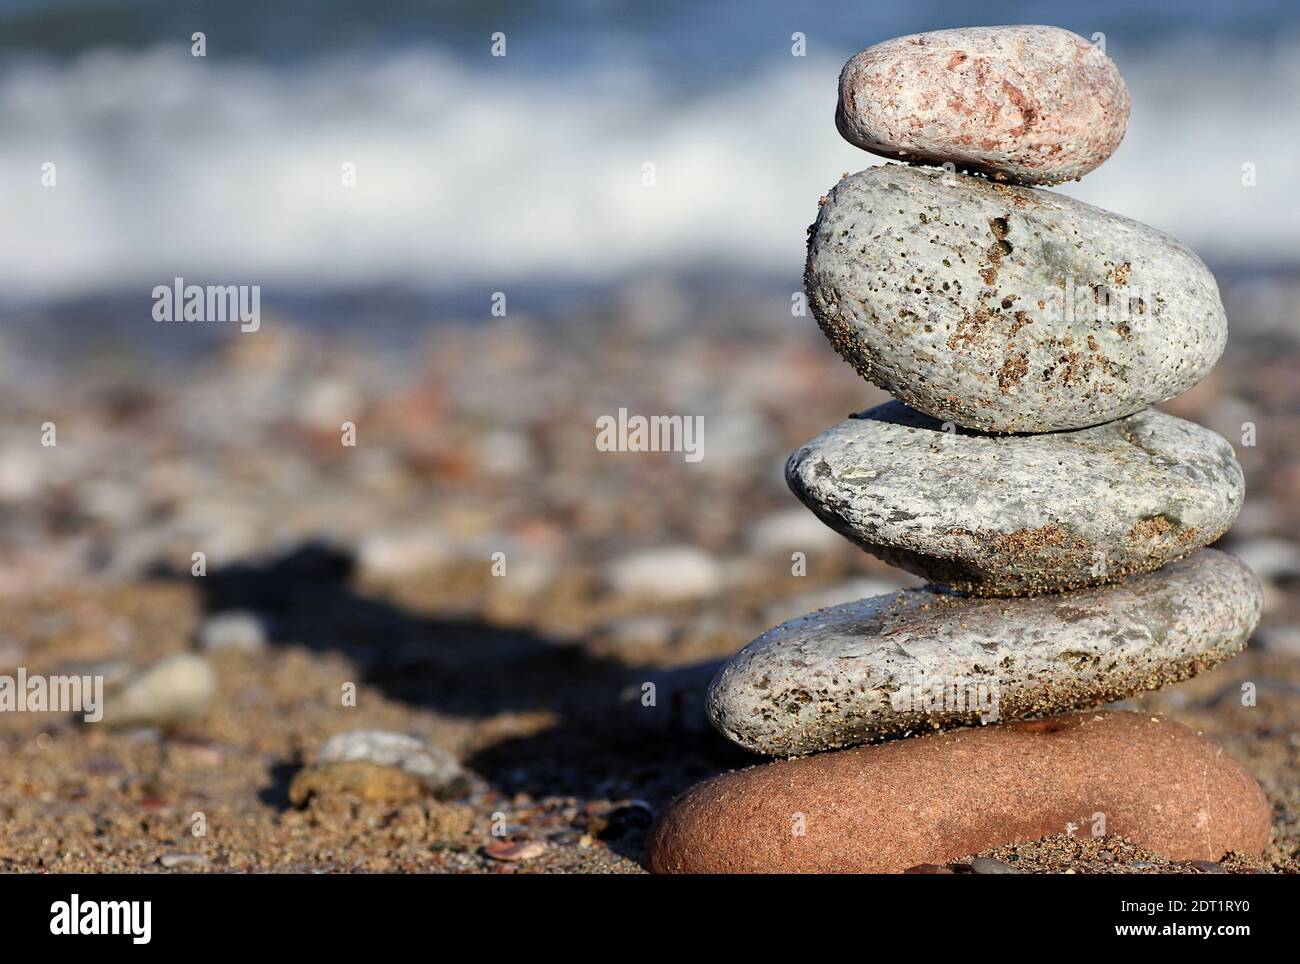 Pietre equilibranti: Un colorato mucchio di pietre equilibrate l'una sull'altra con una spiaggia di ghiaia e un'onda che si infrangono sul litorale sullo sfondo Foto Stock